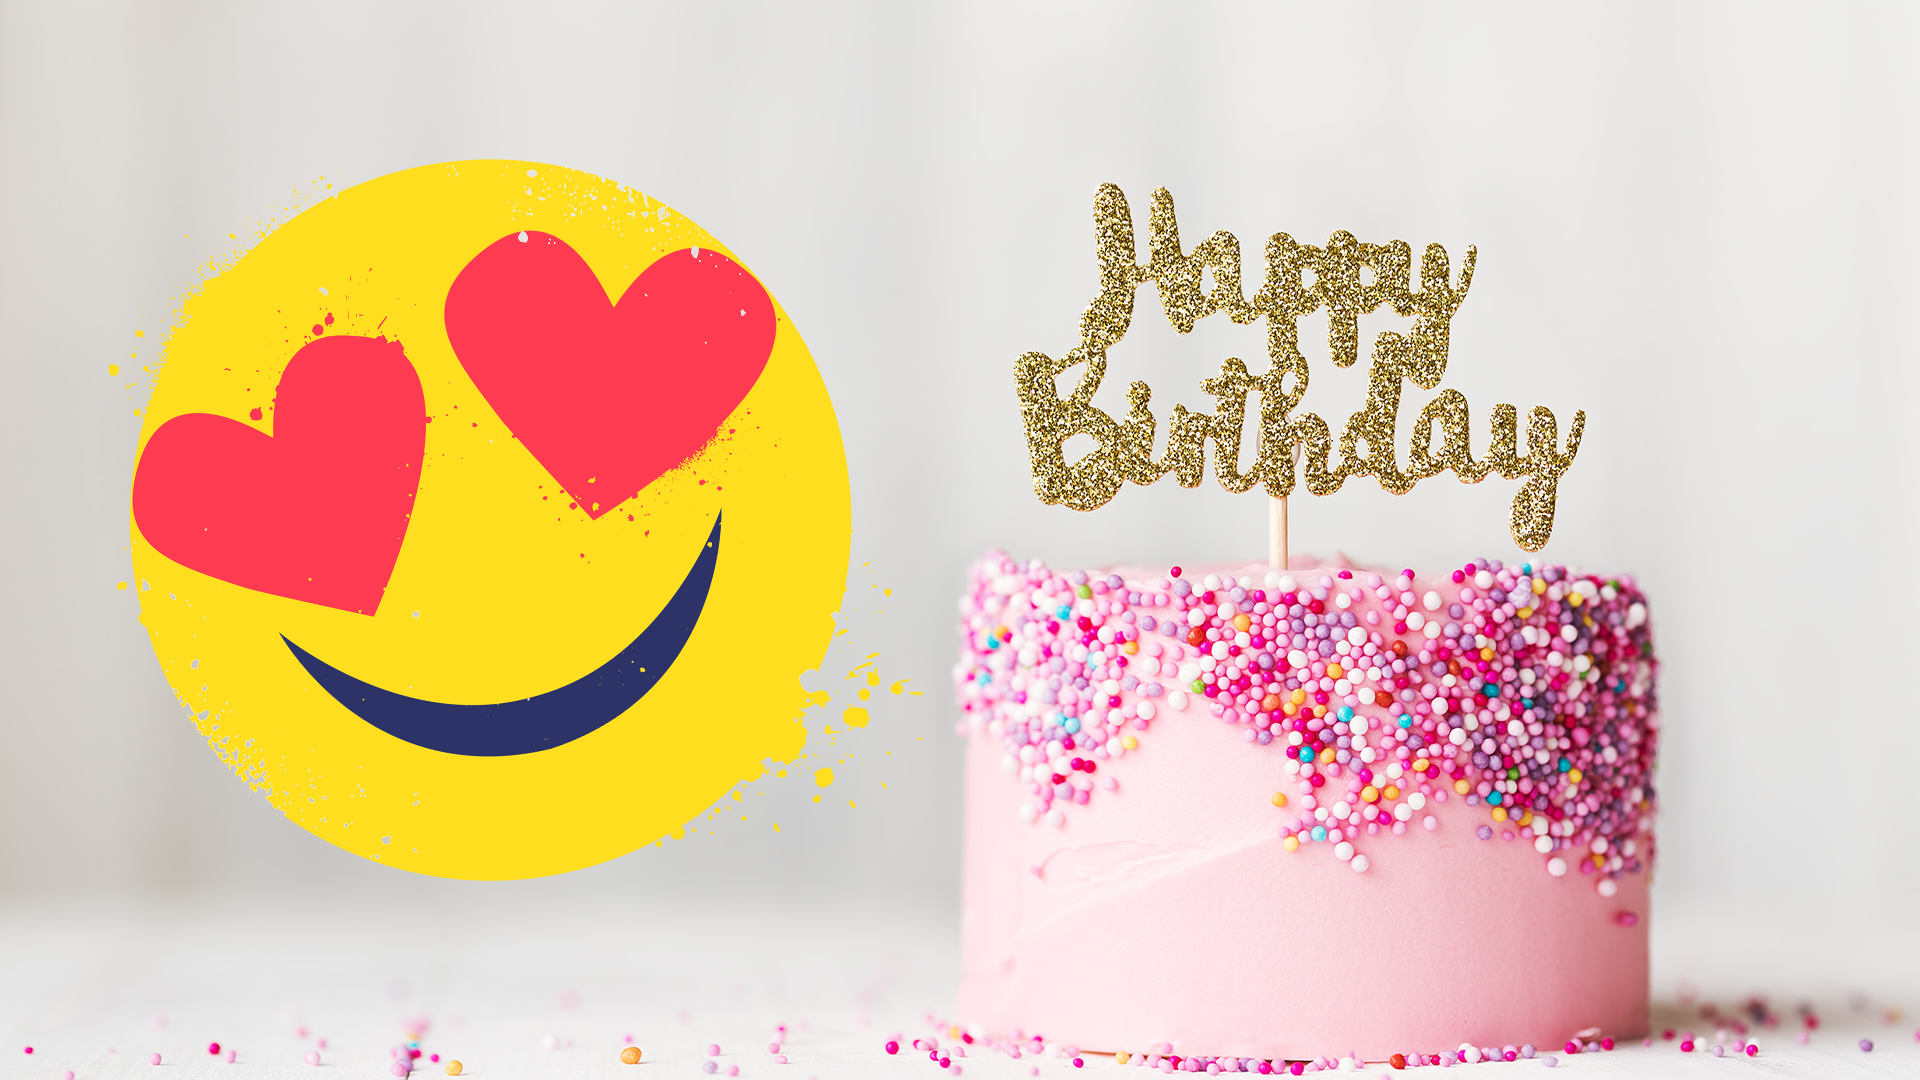 Birthday cake and heart eyes emoji